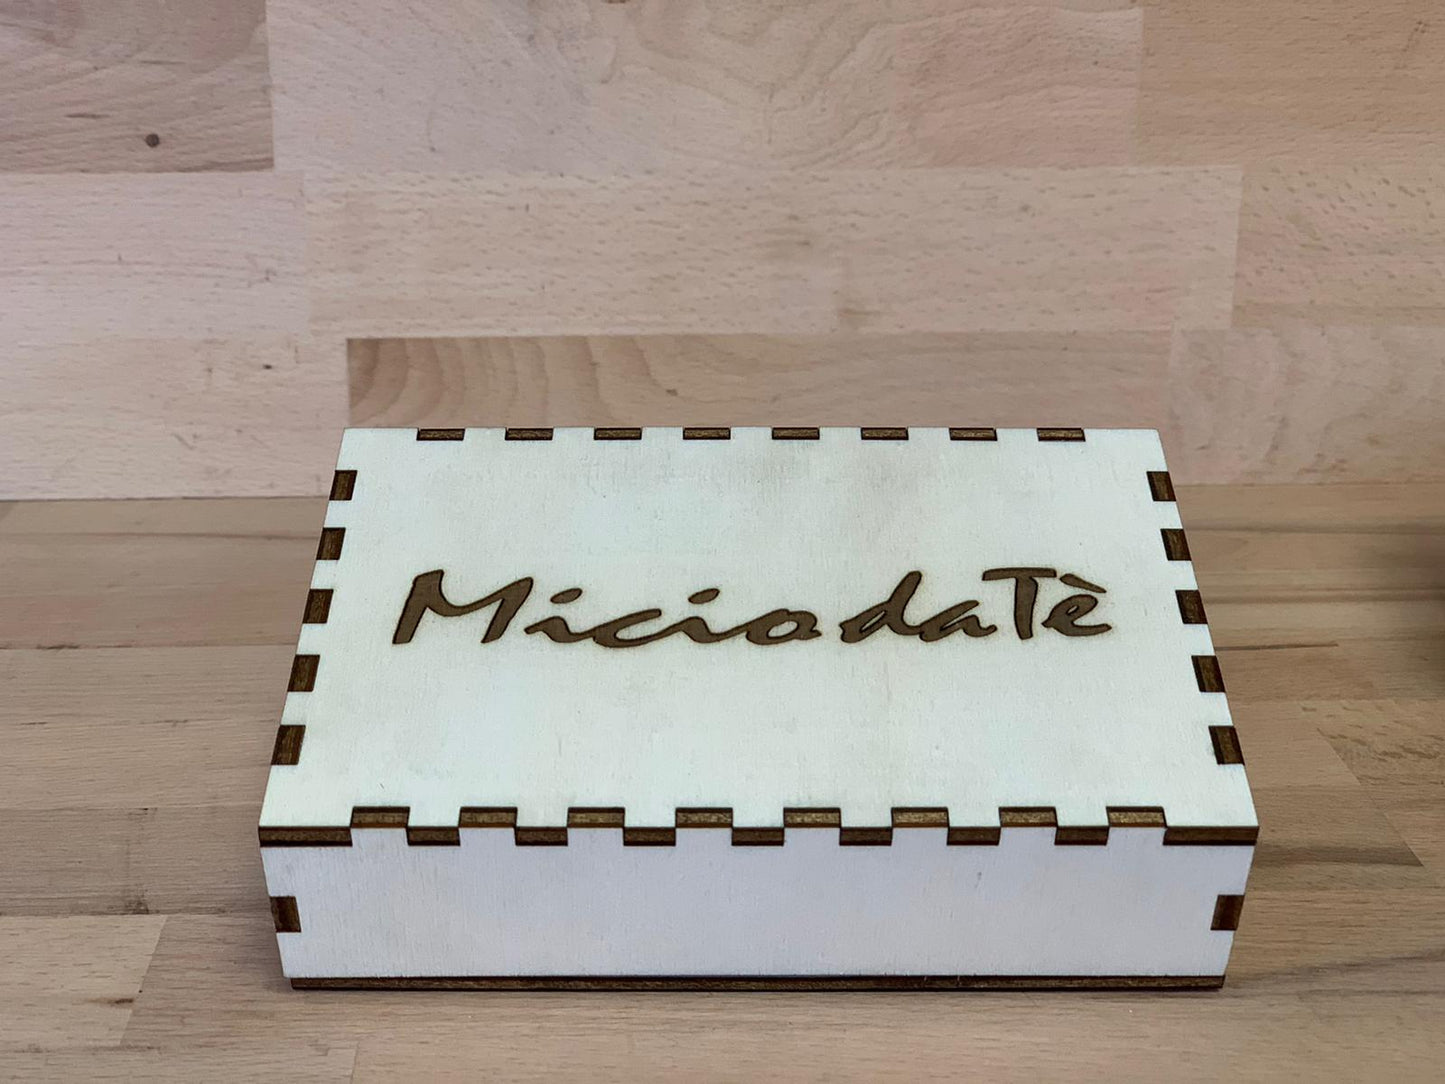 Elinorlab™ Box Limited Edition Micio da Tè